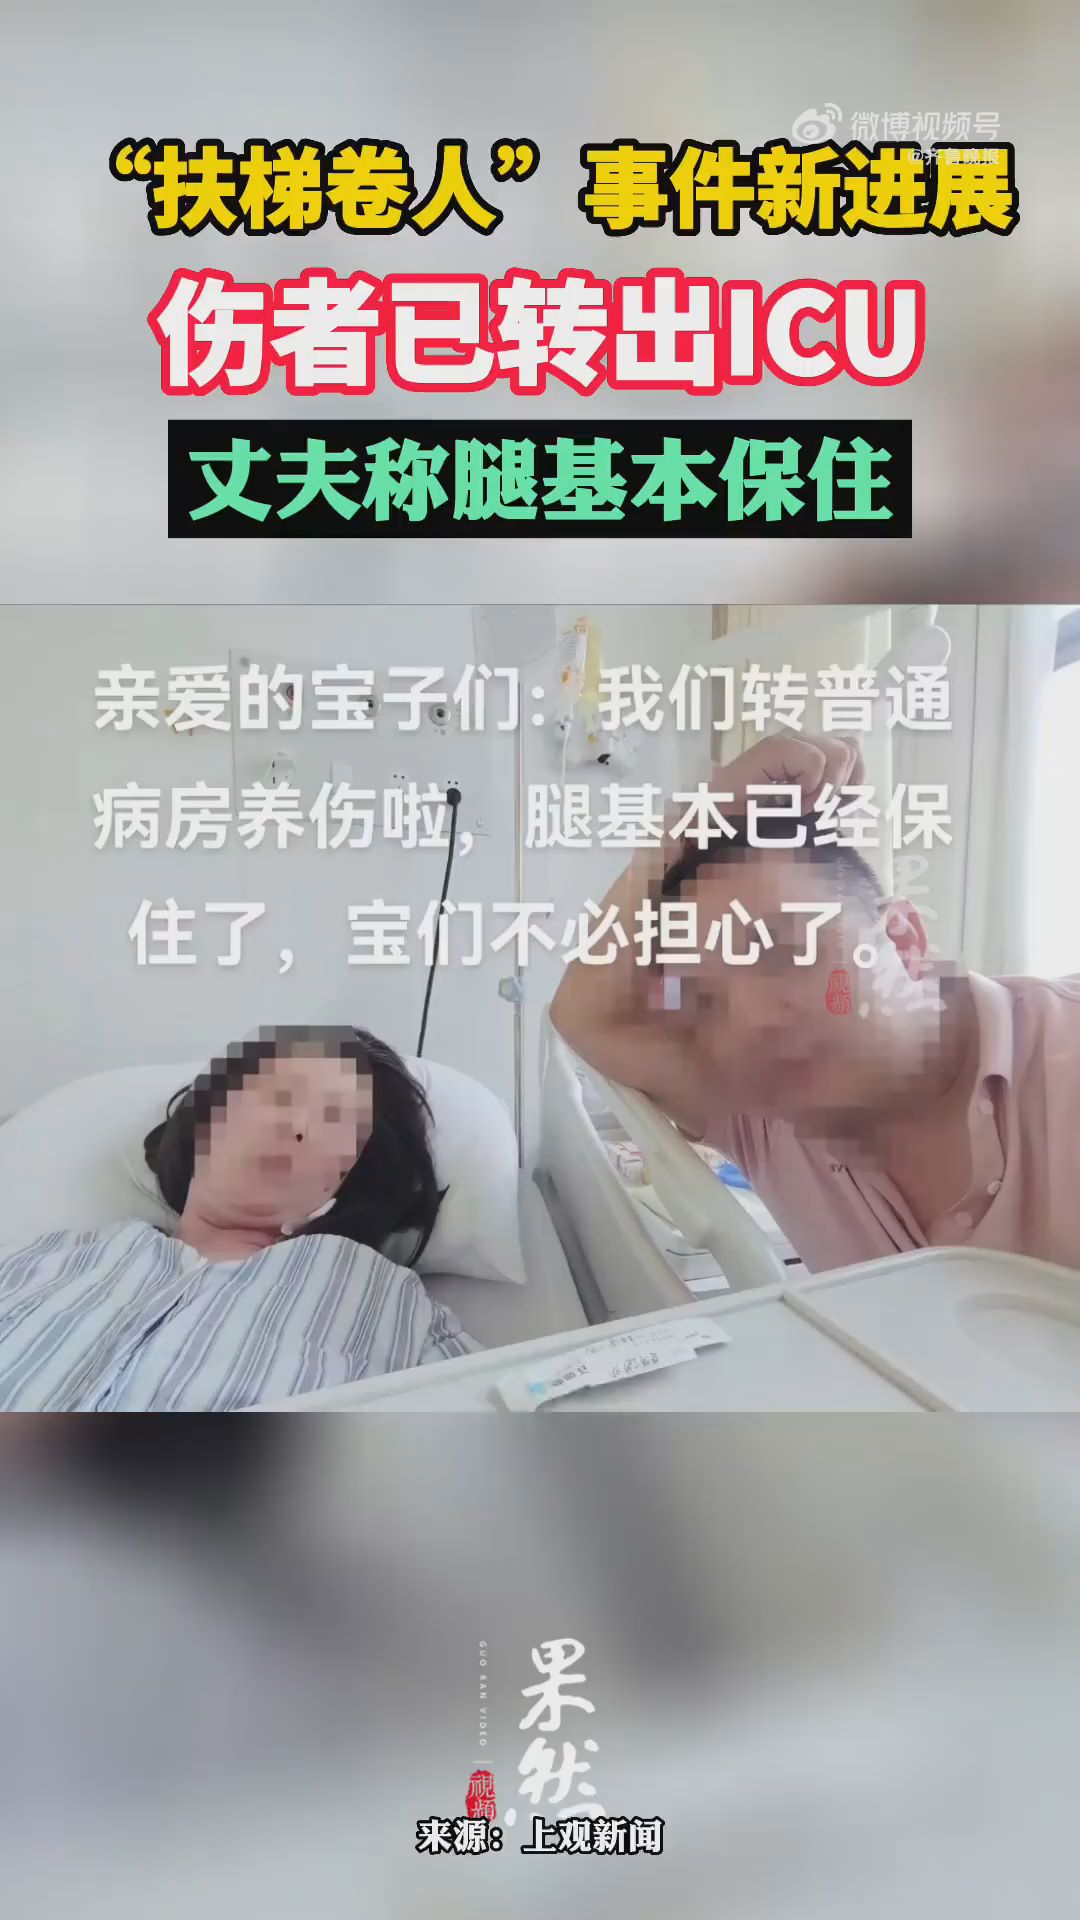 上海扶梯卷人受伤女子已转出ICU